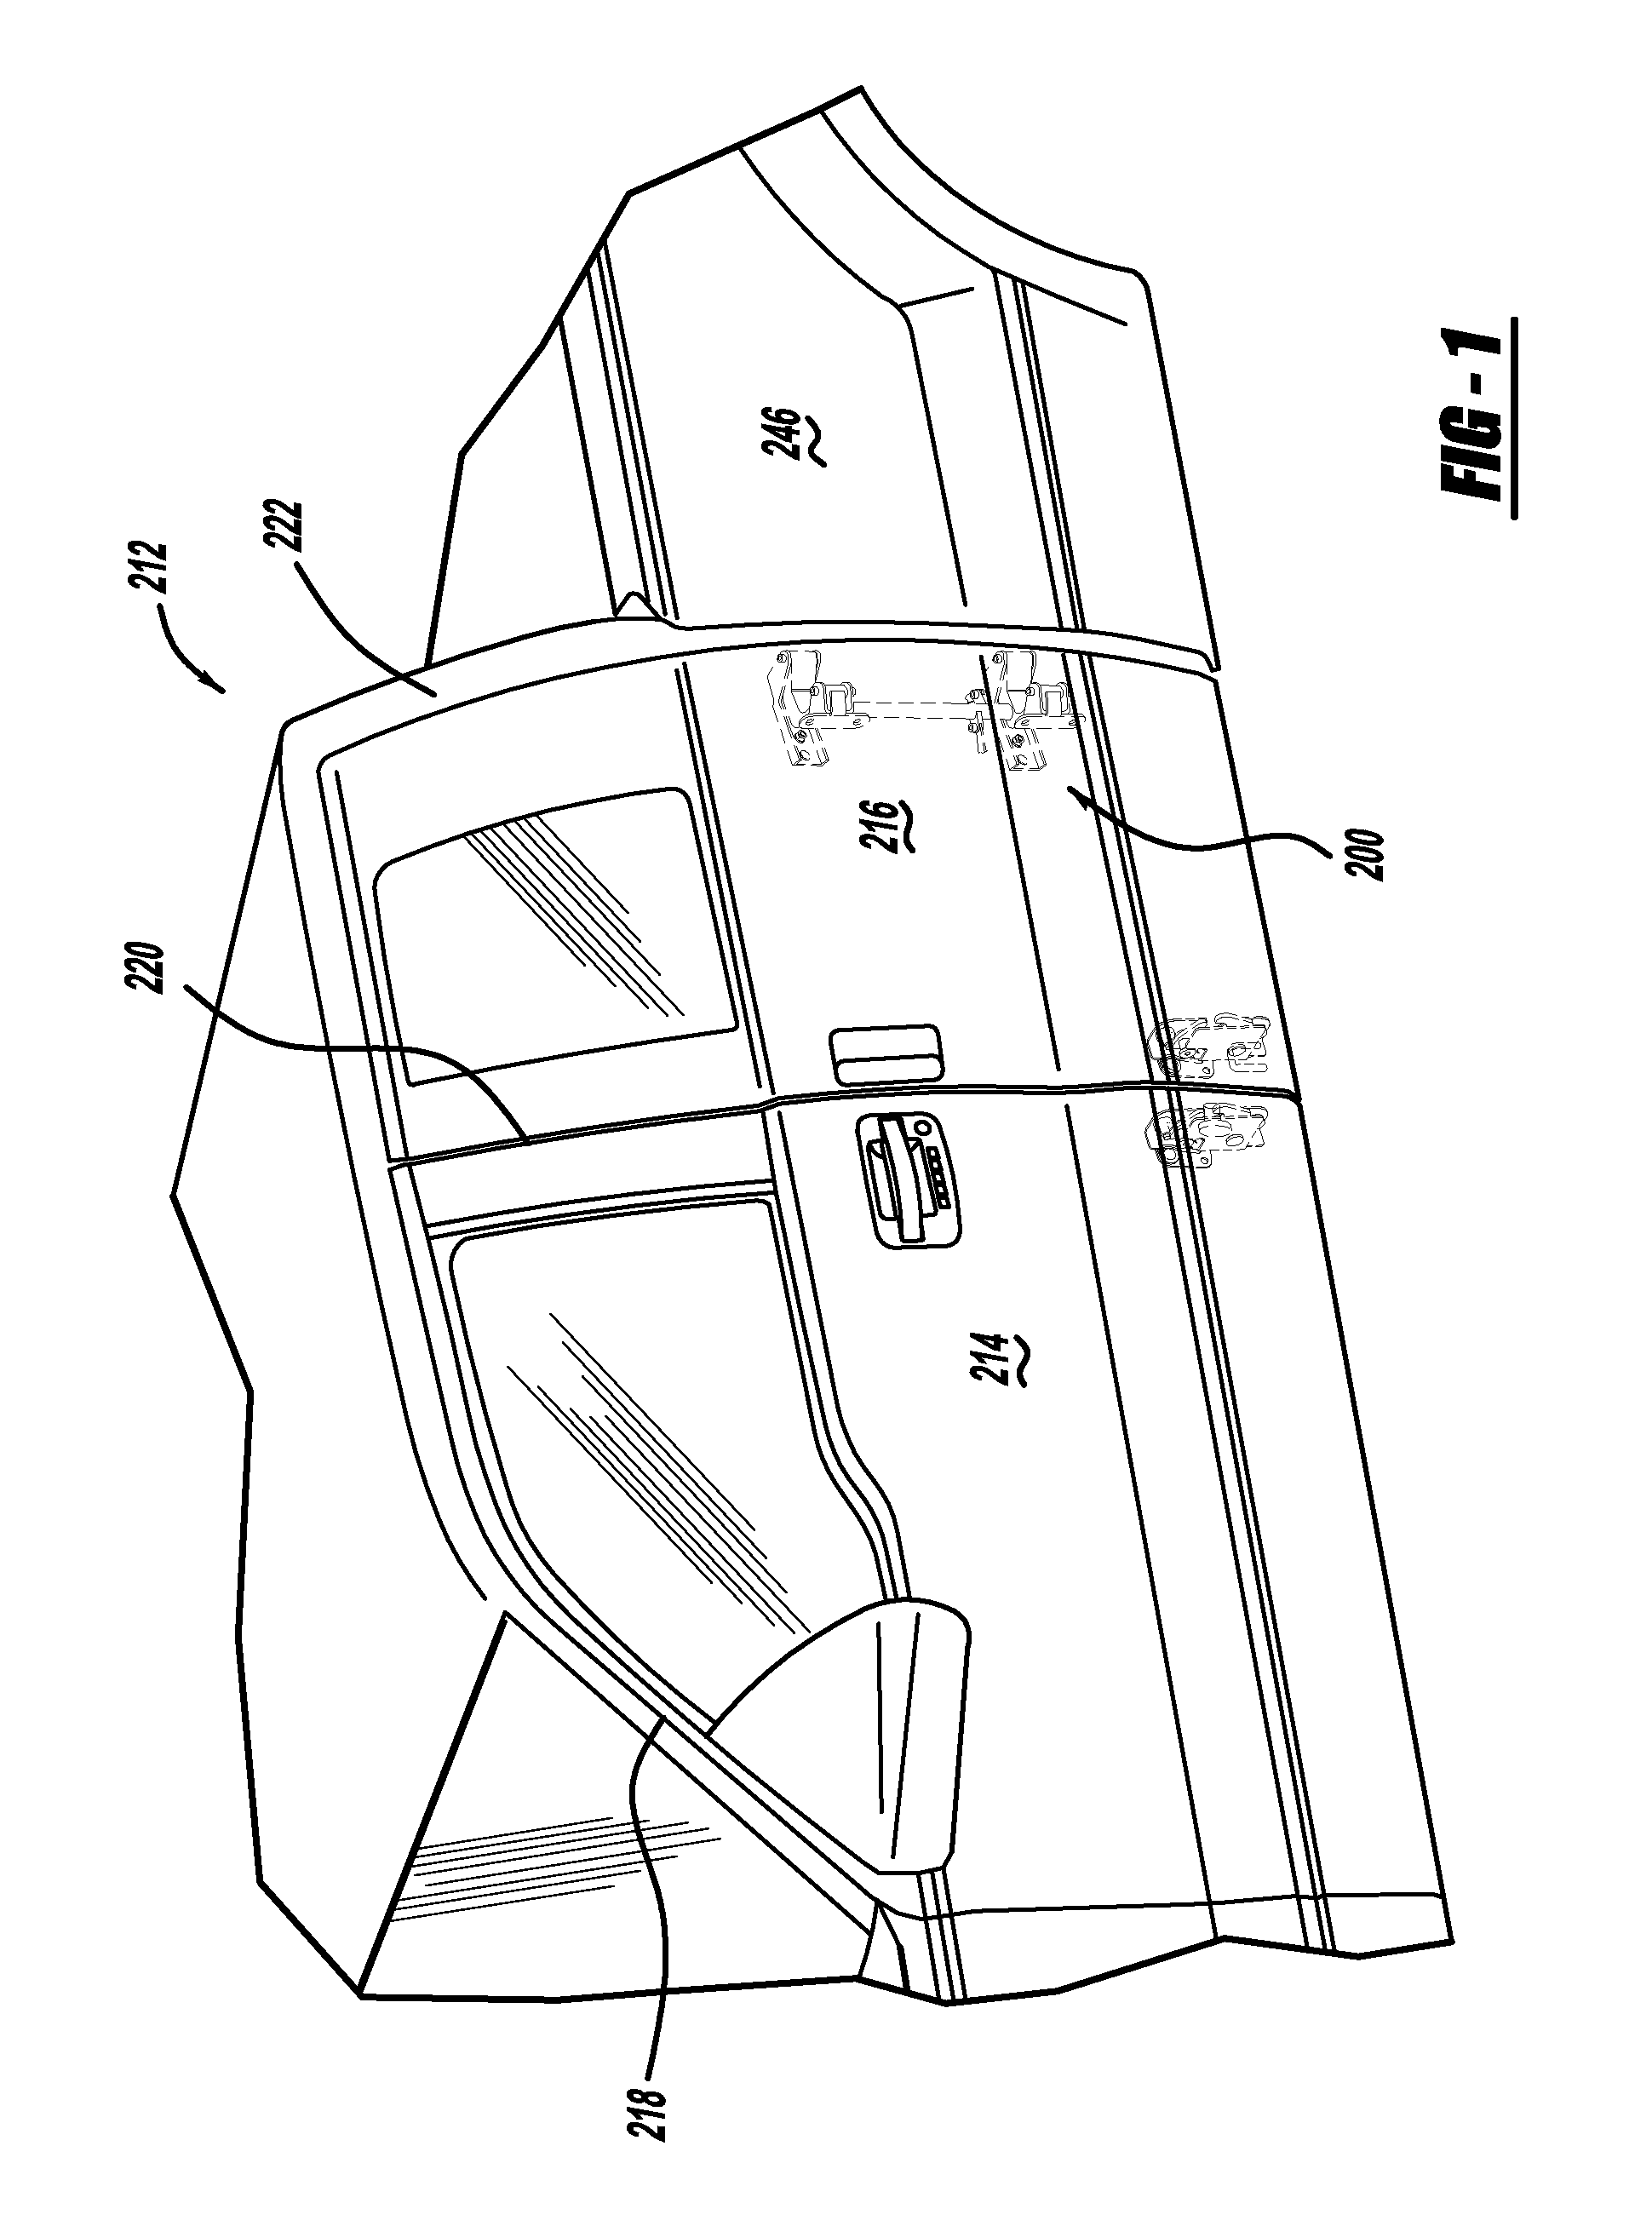 Vehicle rear door articulating mechanism